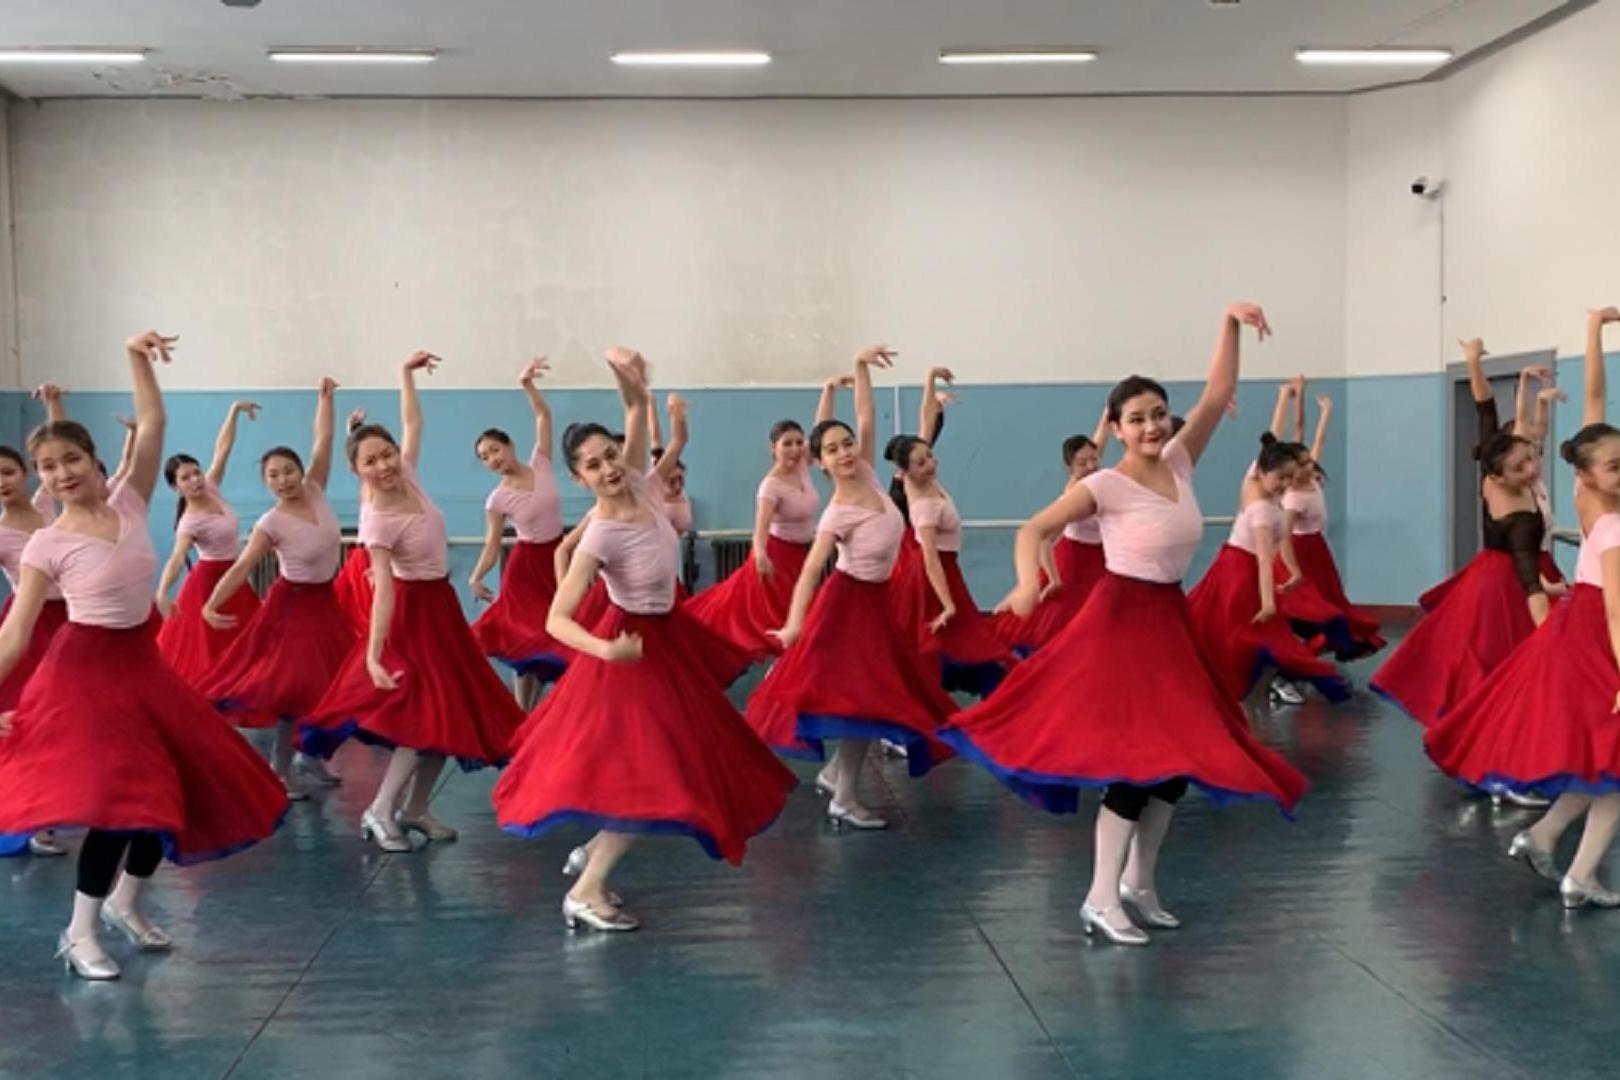 新疆艺术学院哈萨克表演性舞蹈组合《加尔加尔》